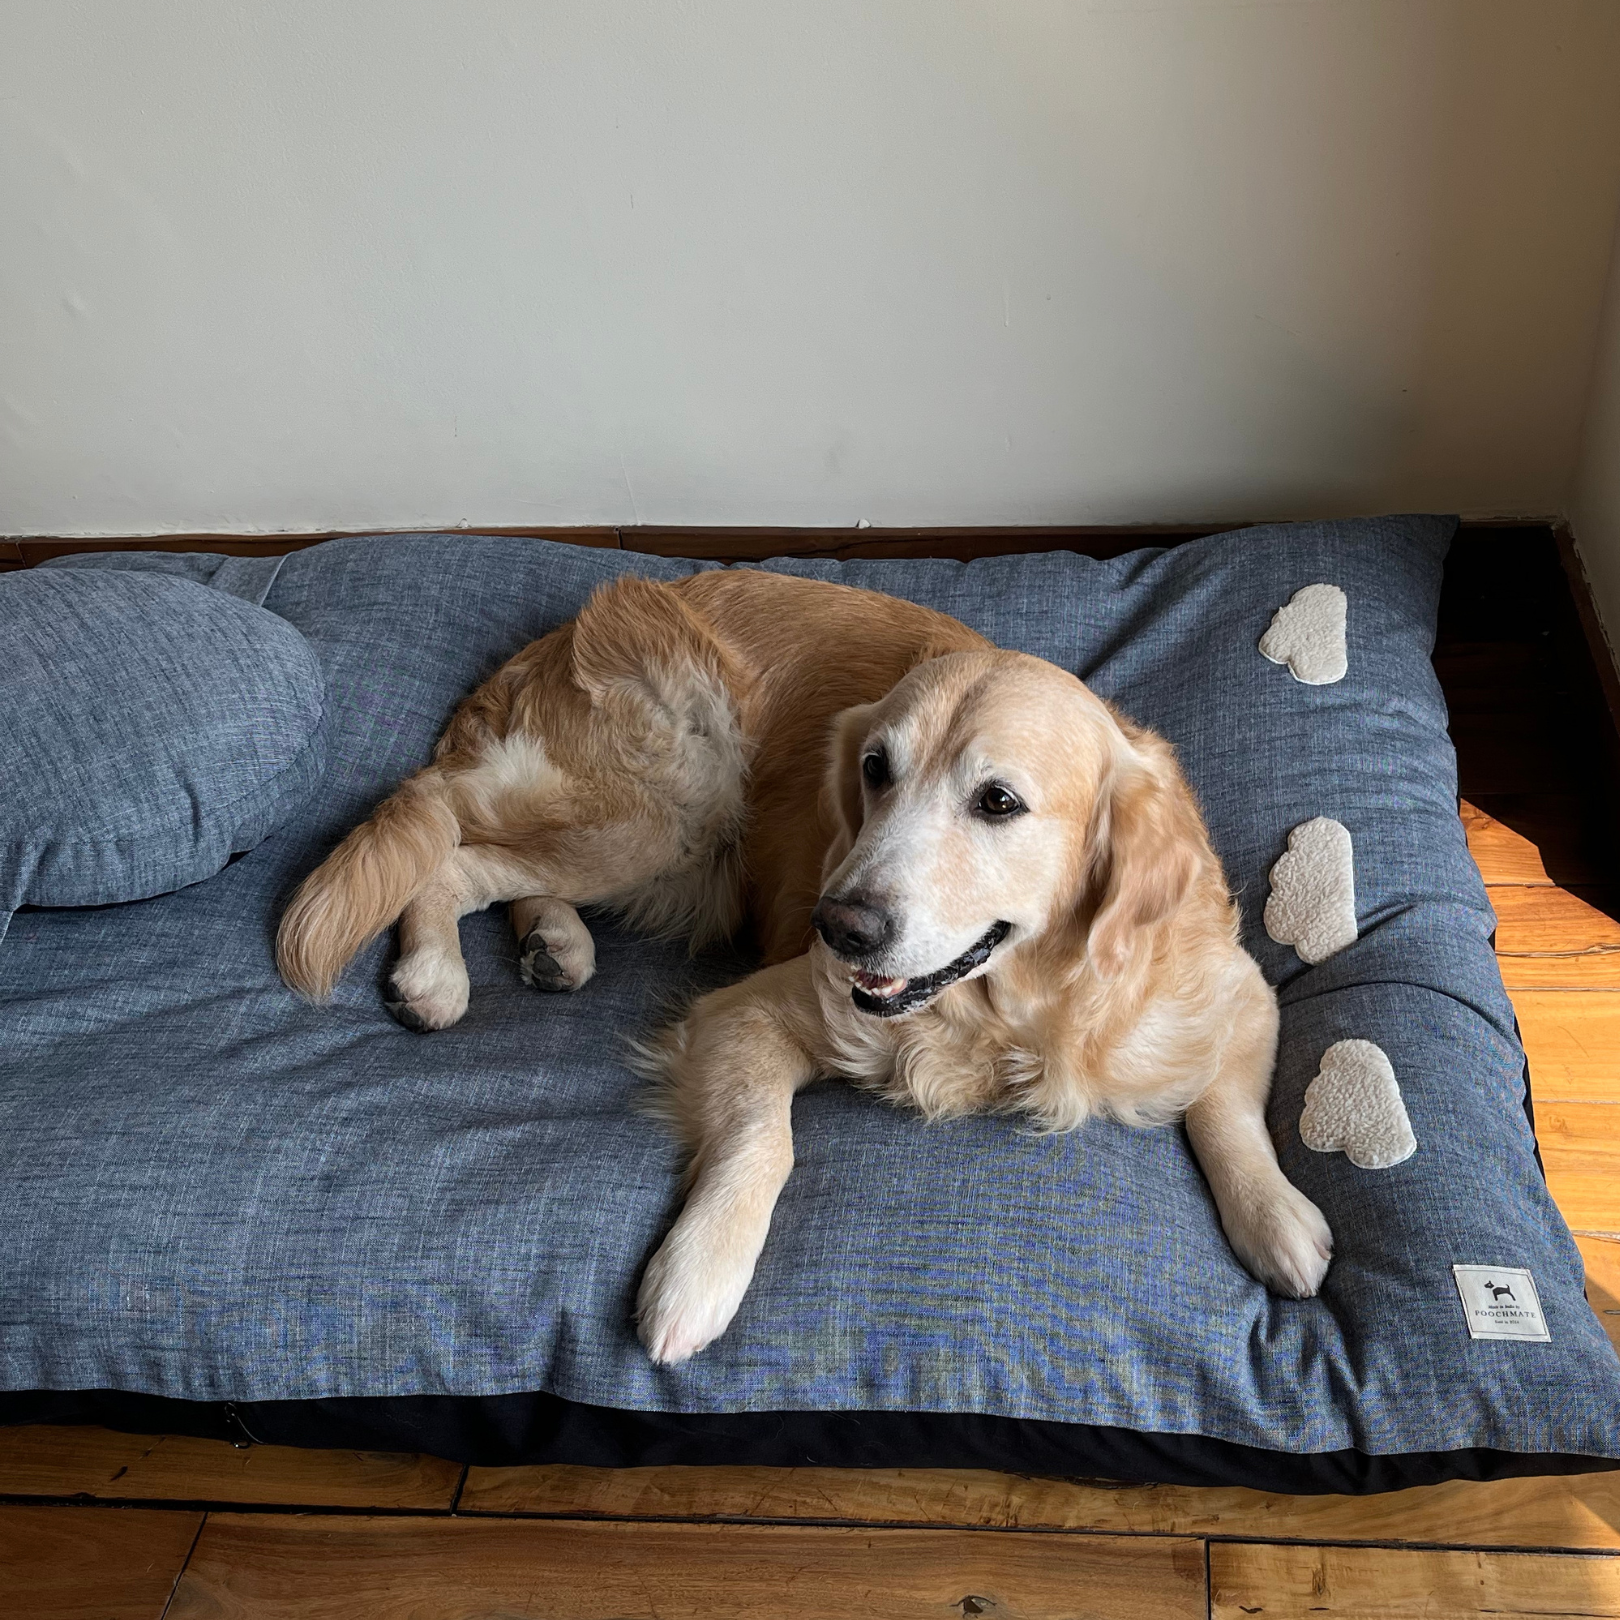 Linen Large Dog Beds | Best Dog Beds in Dubai